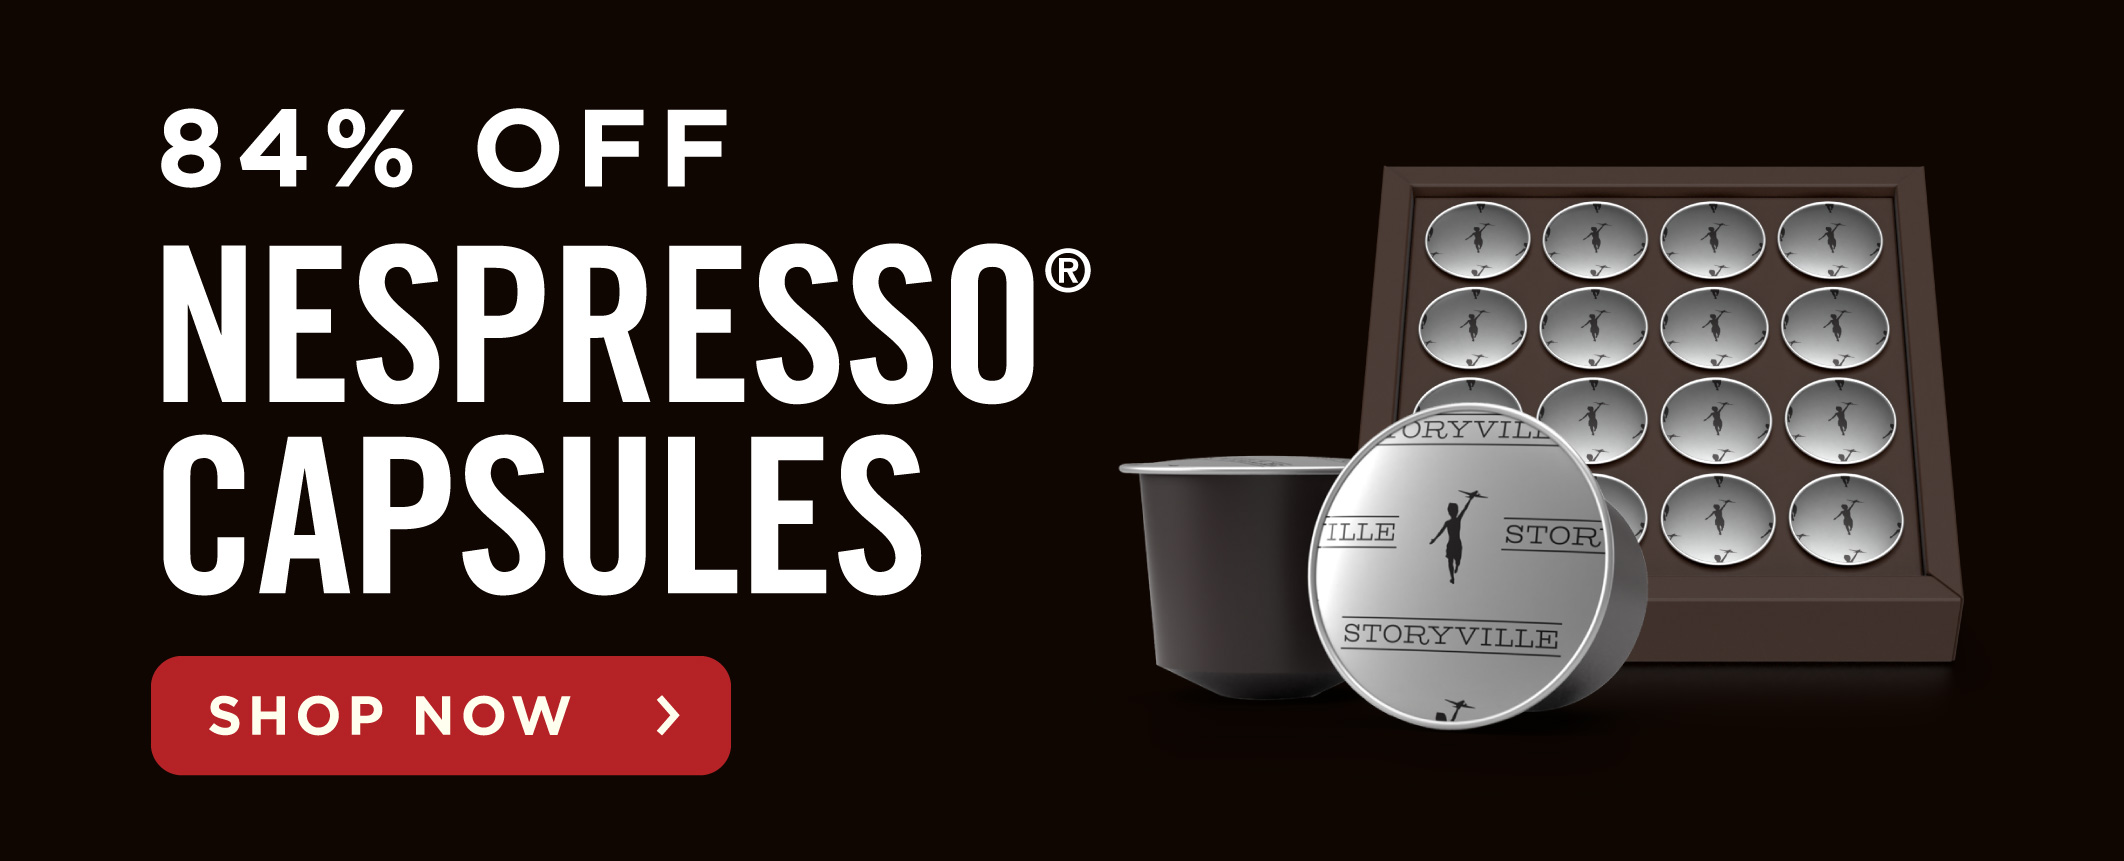 84% Off Nespresso? Capsules